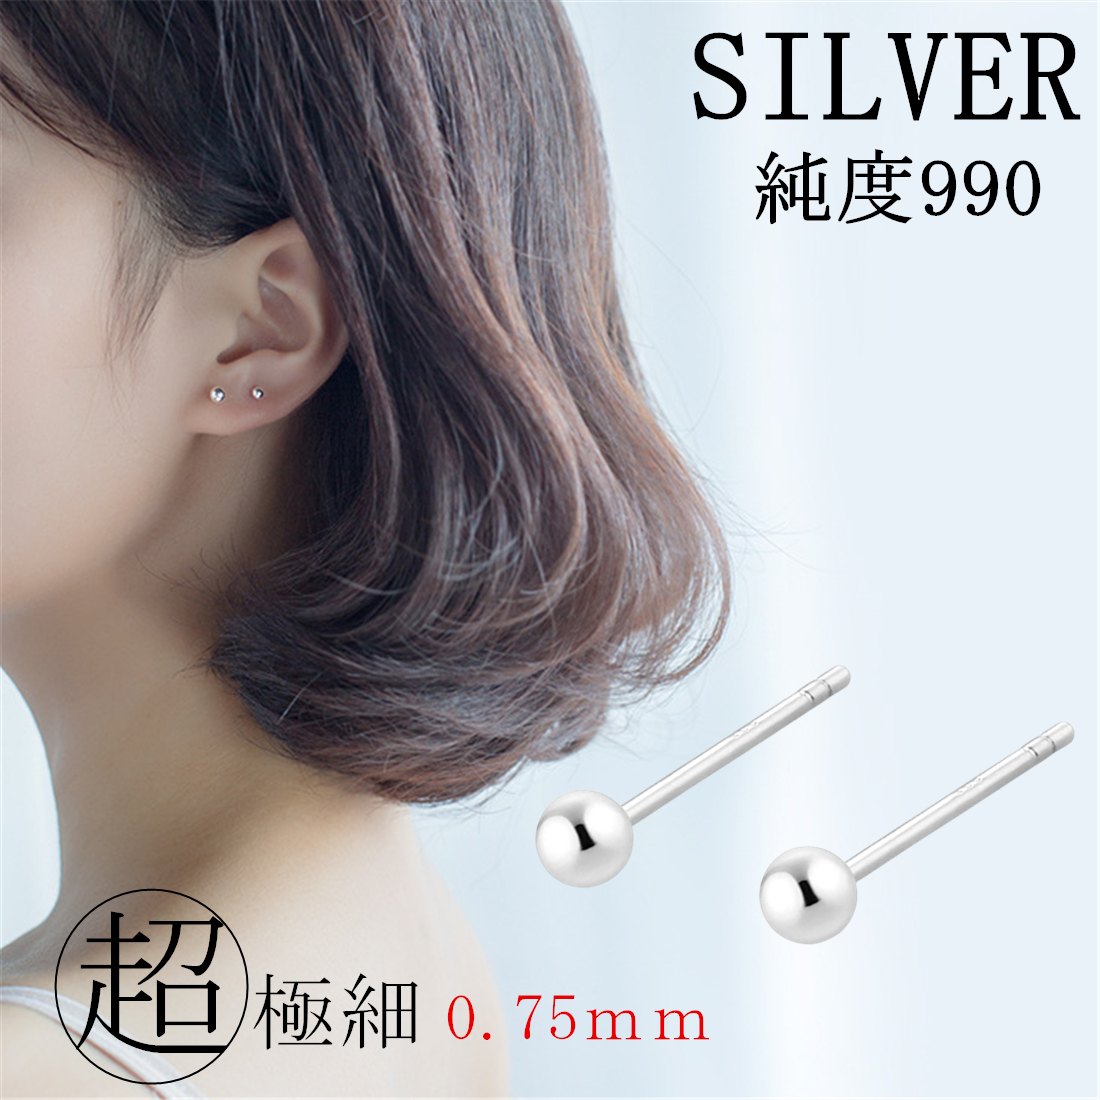 【楽天市場】SILVER990 ボールピアス 純銀 2.5mm 3mm 4mm 1